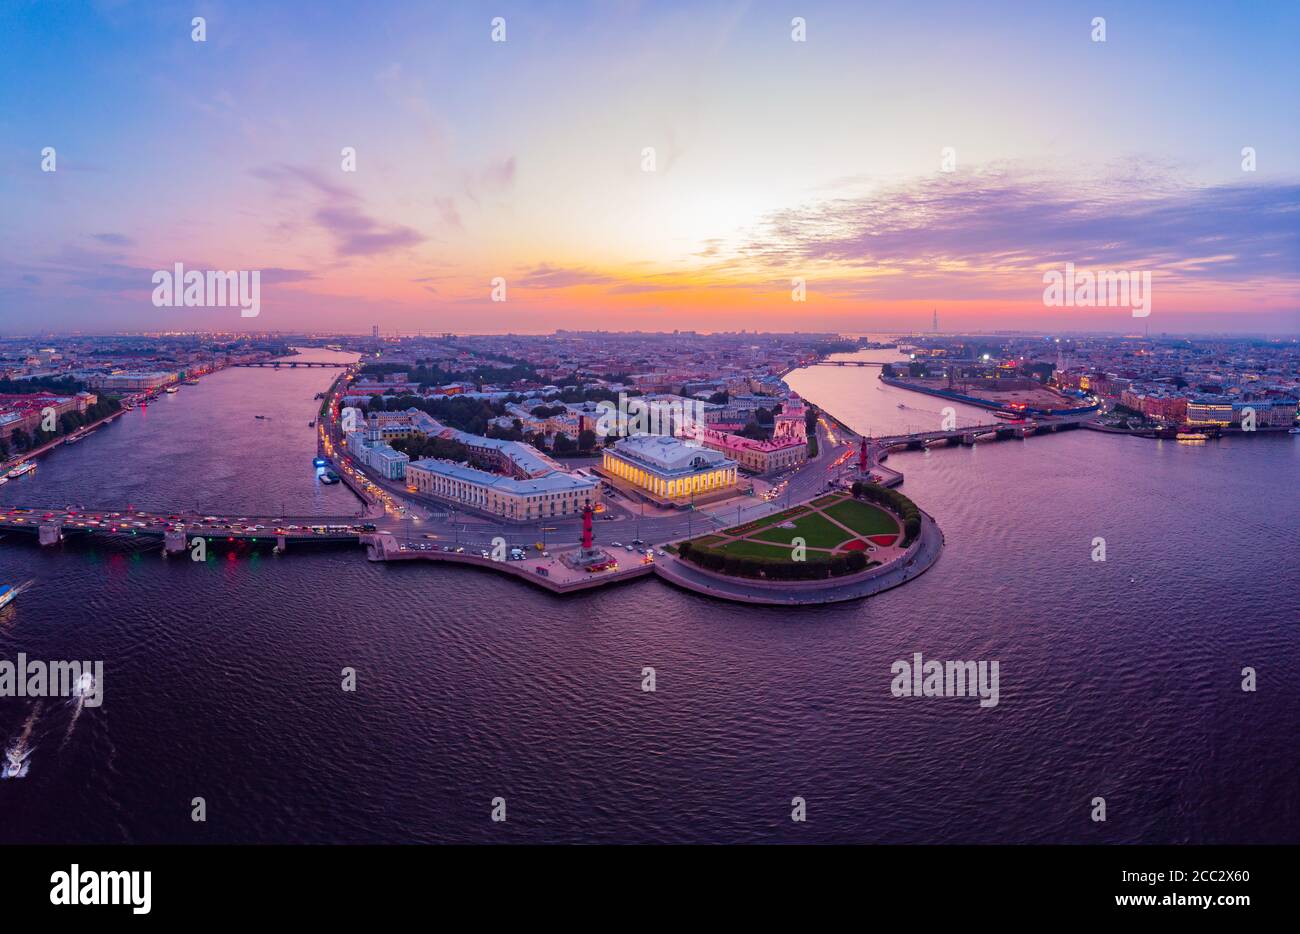 Belle vue aérienne dans les nuits blanches de Saint-Pétersbourg, Russie, l'île de Vasilievskiy au coucher du soleil, les colonnes Rostral, l'Amirauté, le Palais Brid Banque D'Images